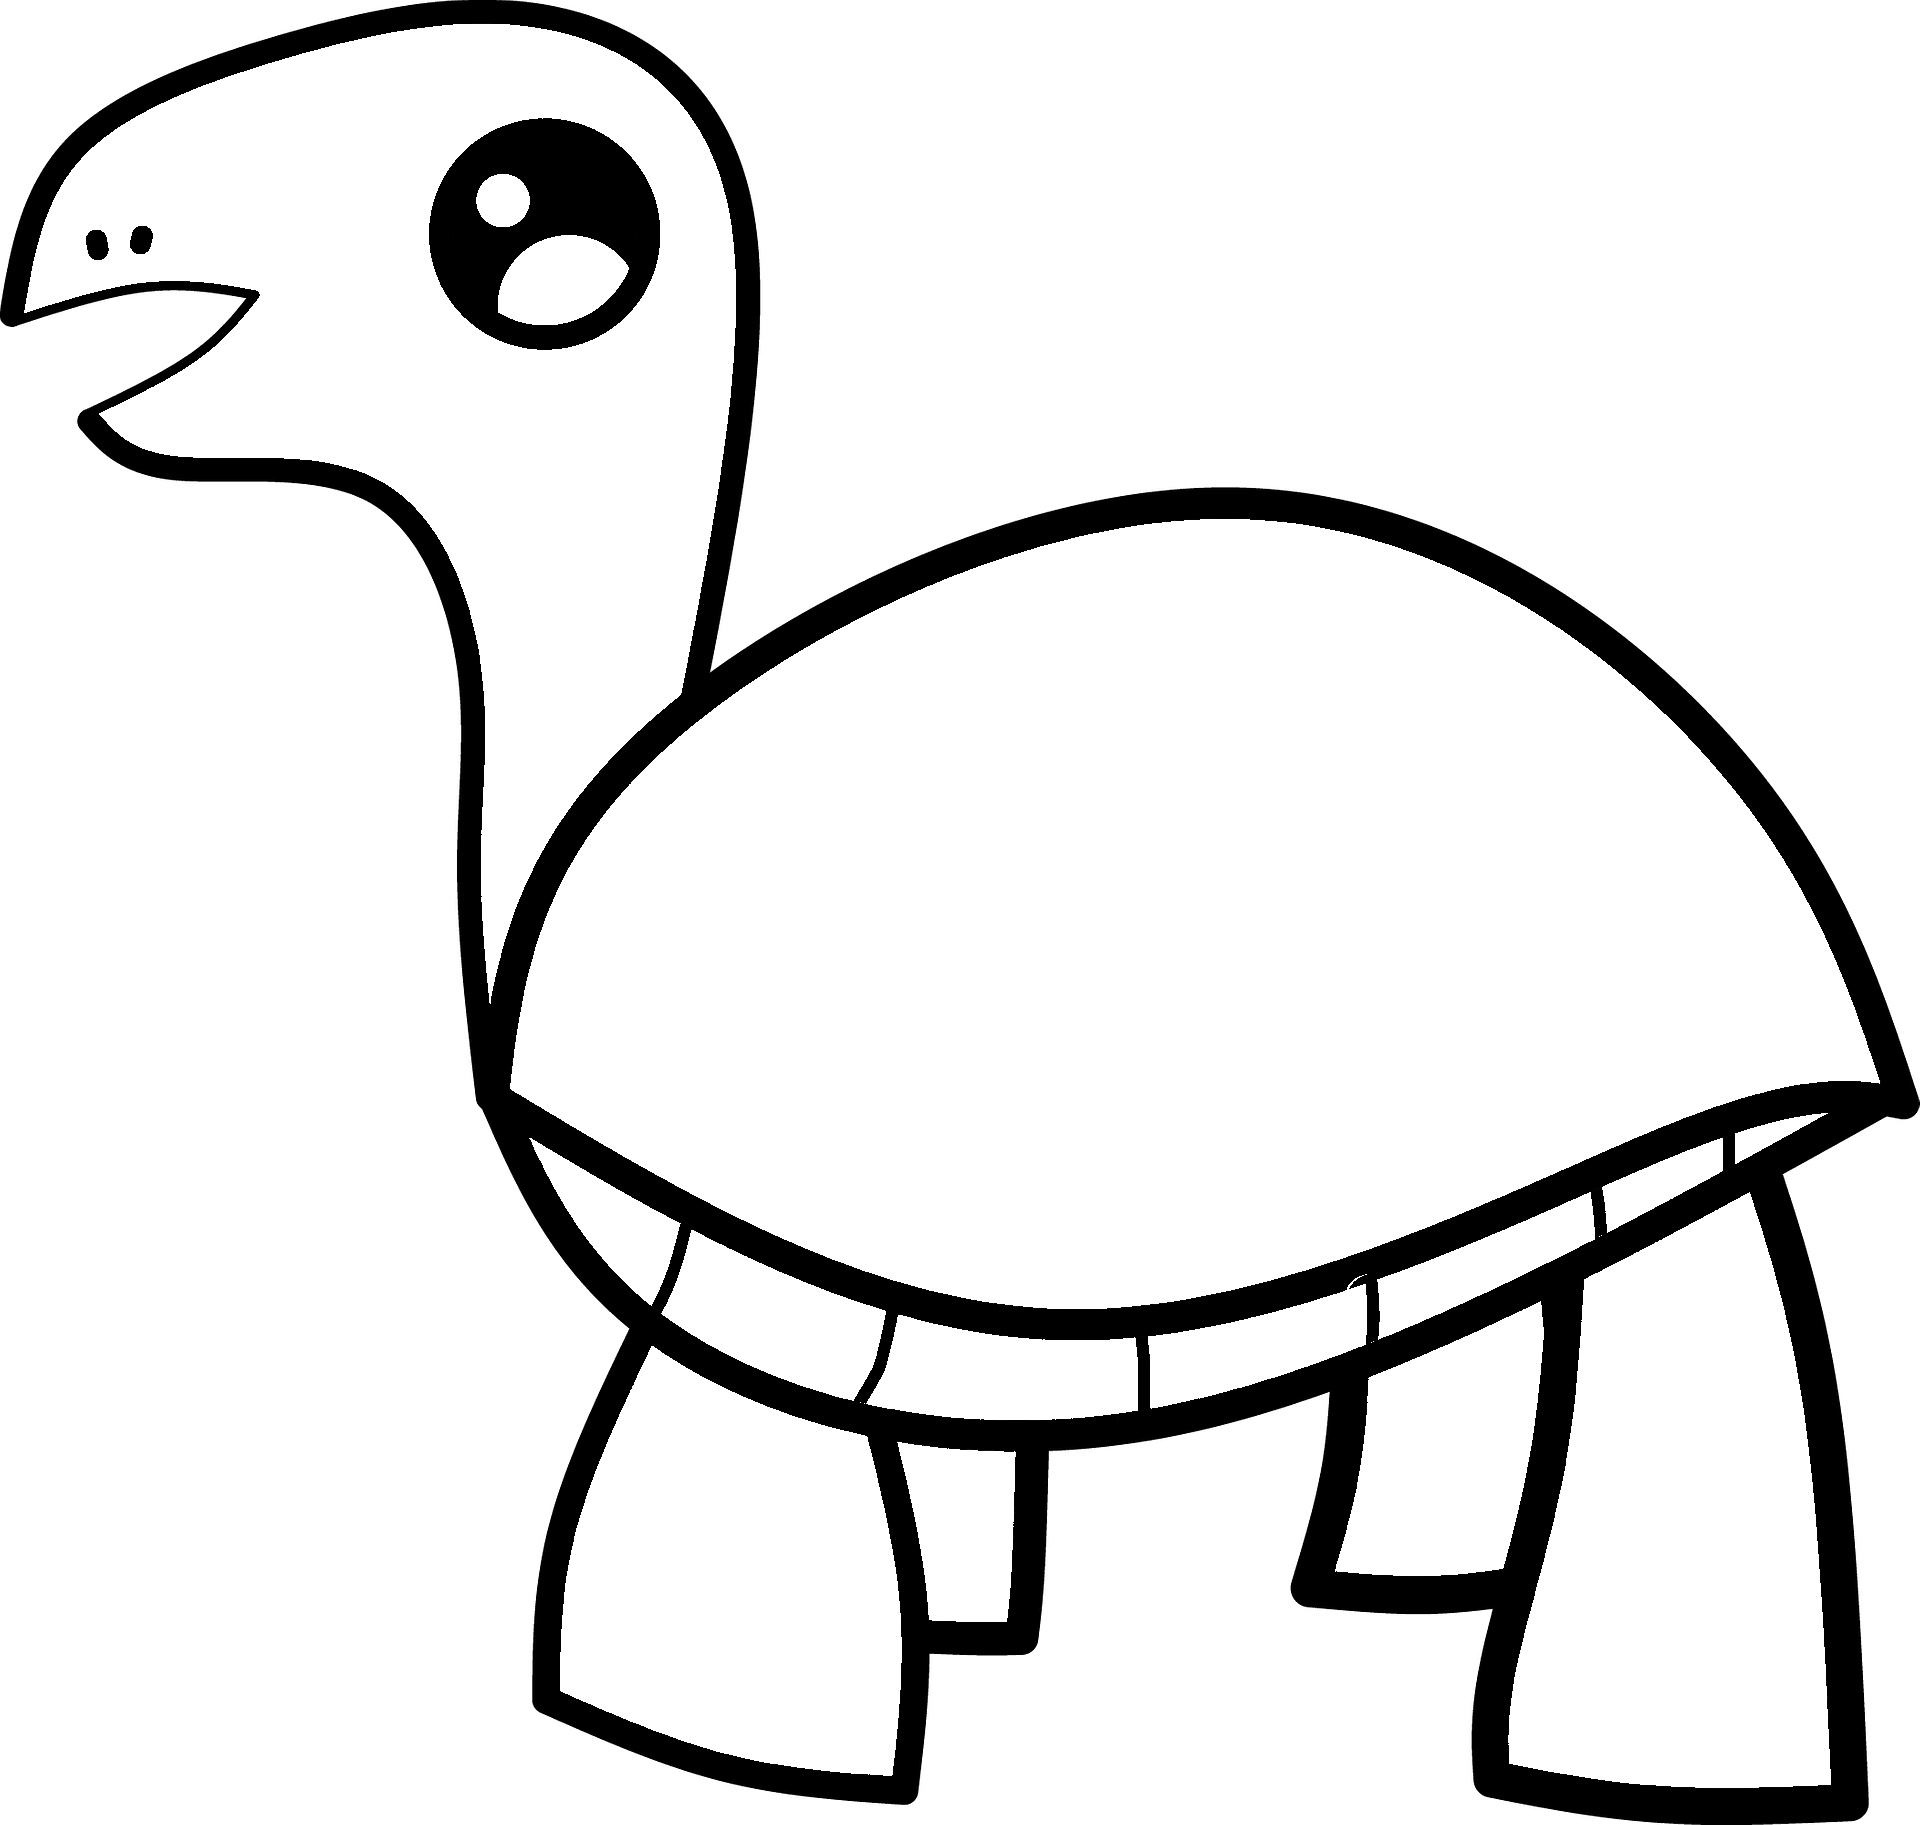 Malvorlage einer Schildkröte